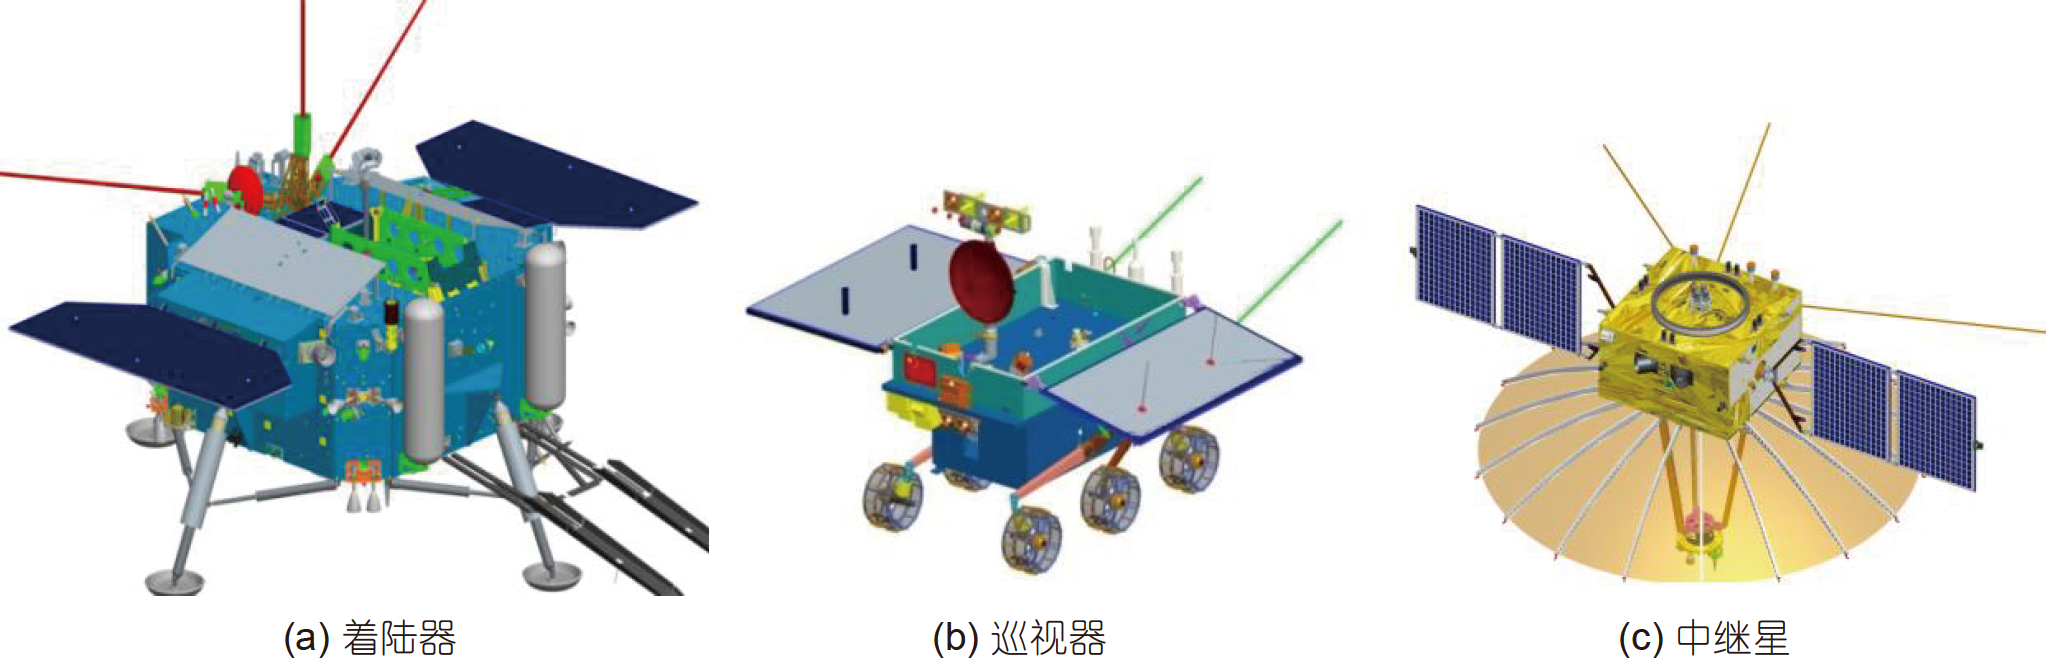 Миссия «Чанъэ-4» — спутник-ретранслятор «Цэюцяо» (Сорочий мост) - 44